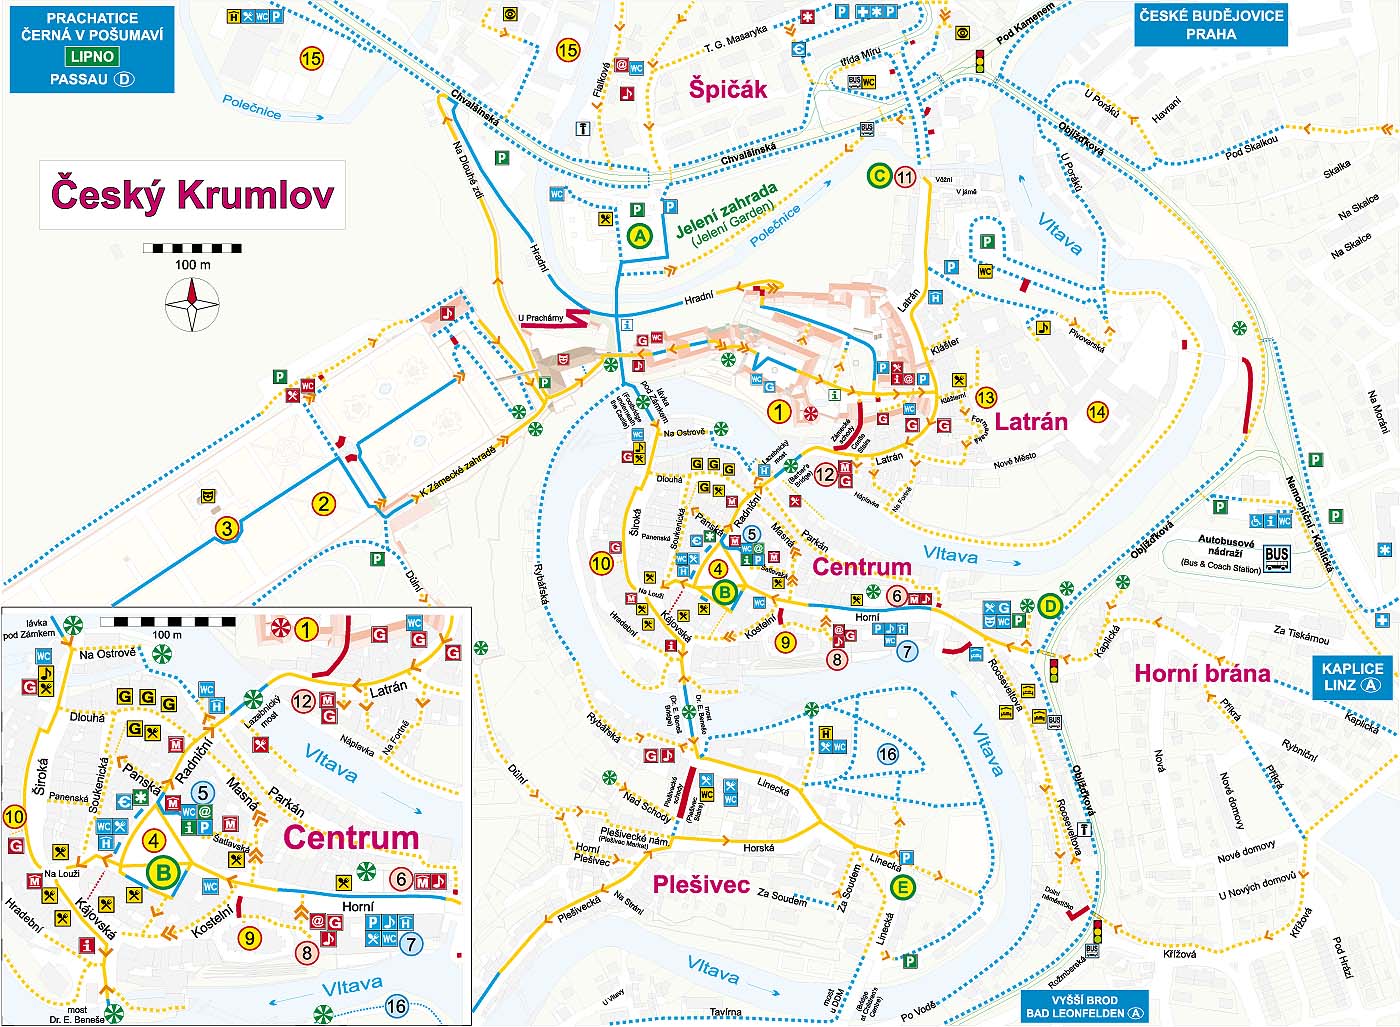 Český Krumlov: A Guide for Handicapped and Other Visitors, Map of Český Krumlov